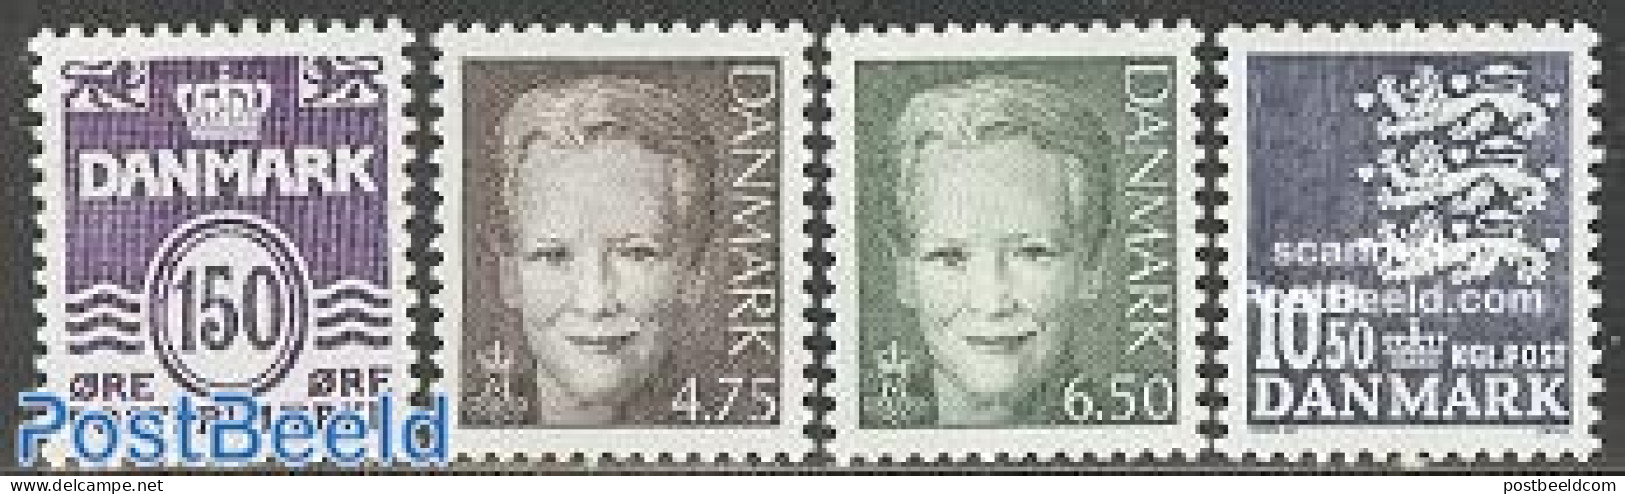 Denmark 2002 Definitives 4v, Mint NH - Unused Stamps